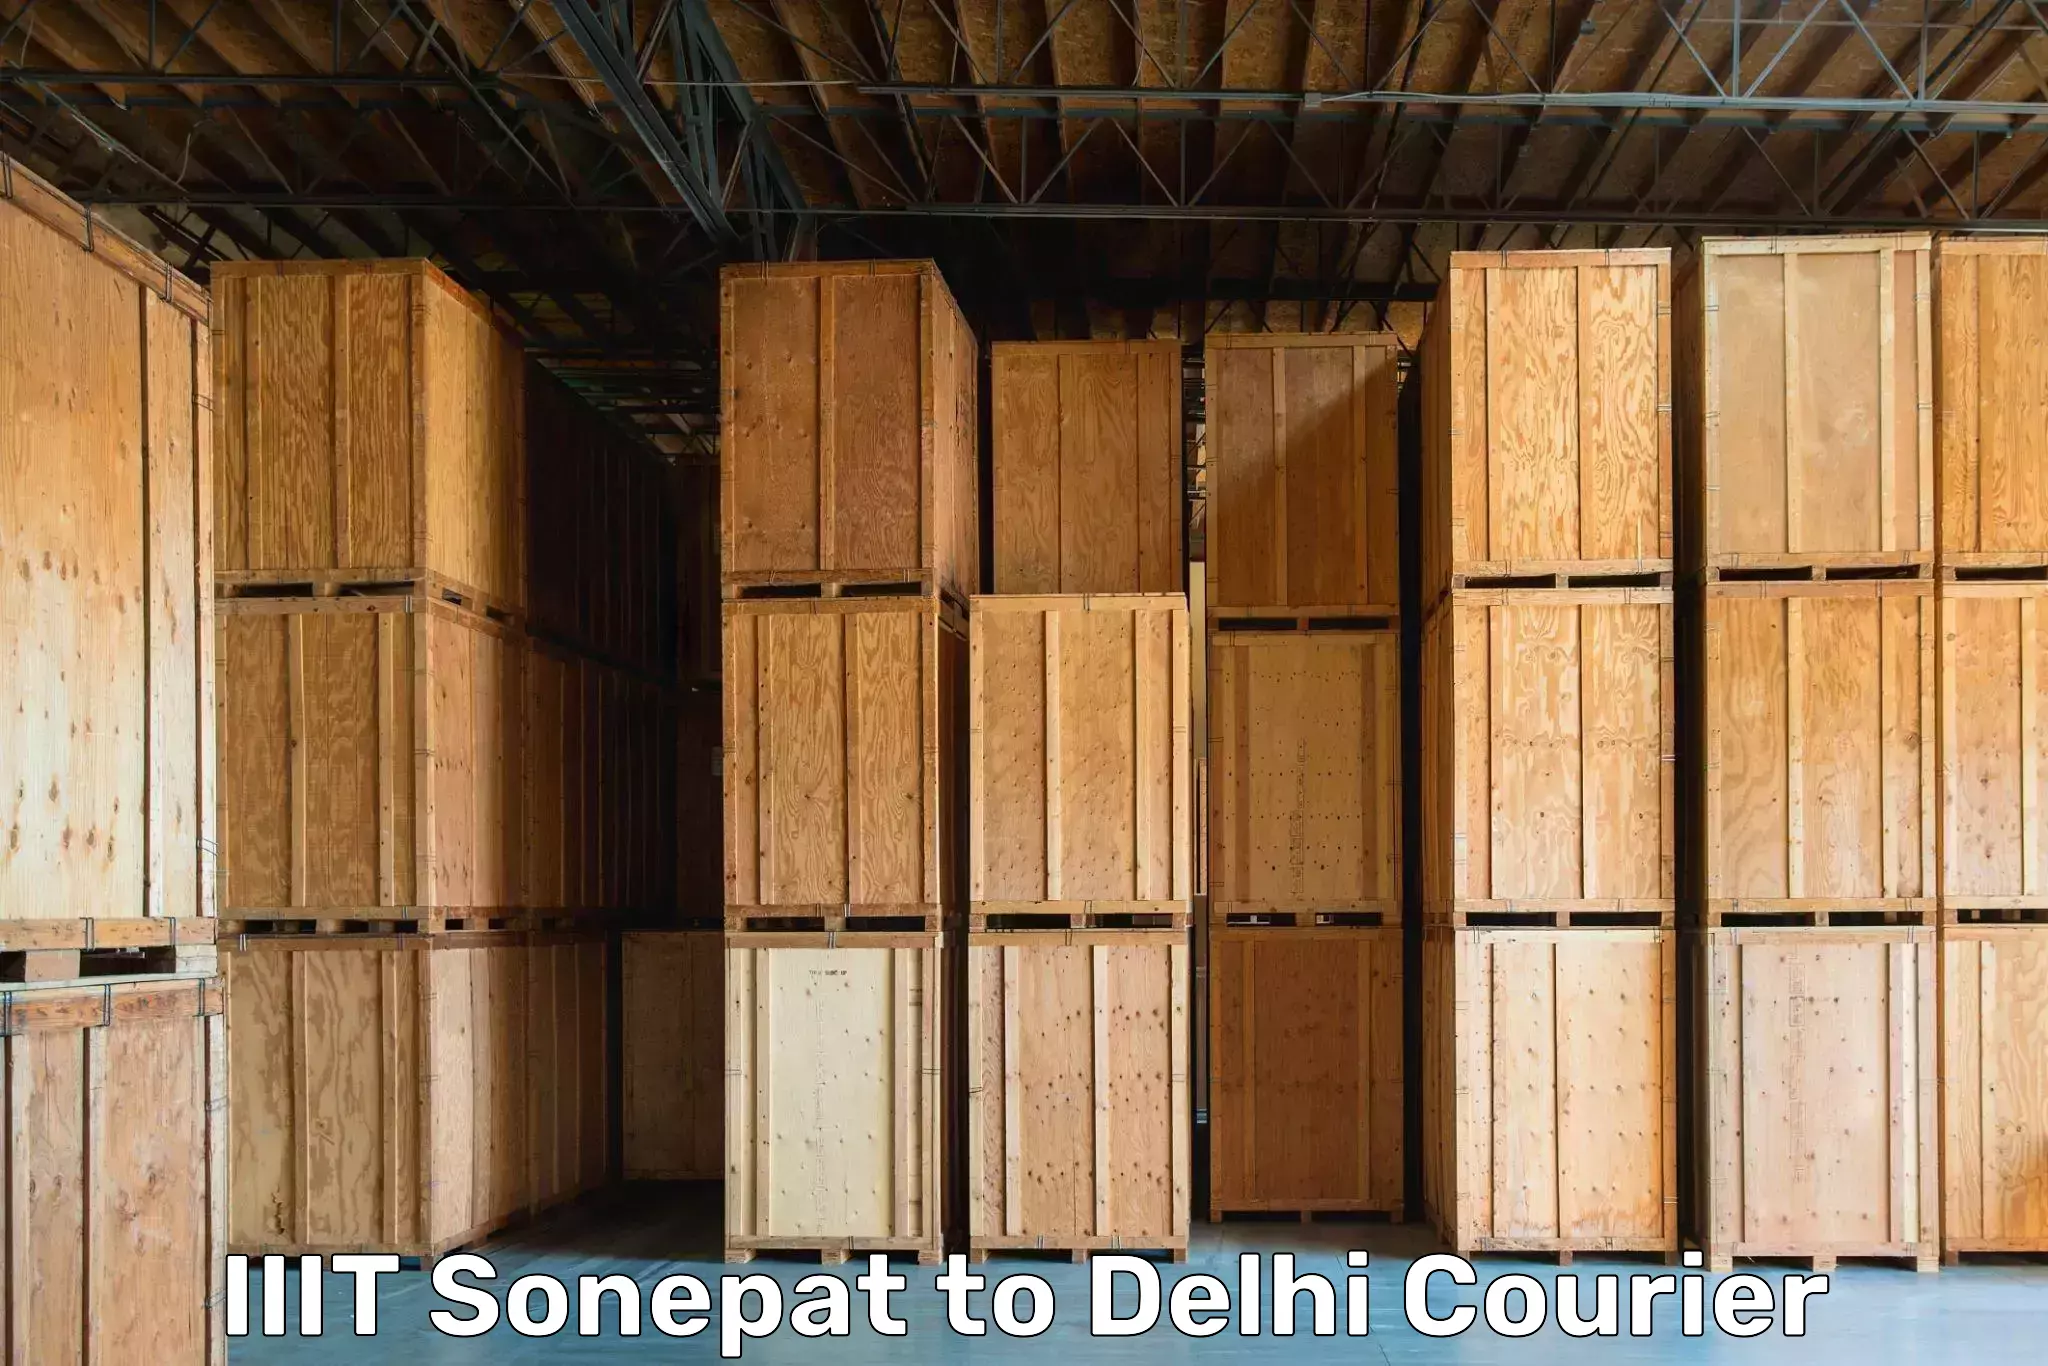 Furniture transport specialists IIIT Sonepat to Delhi